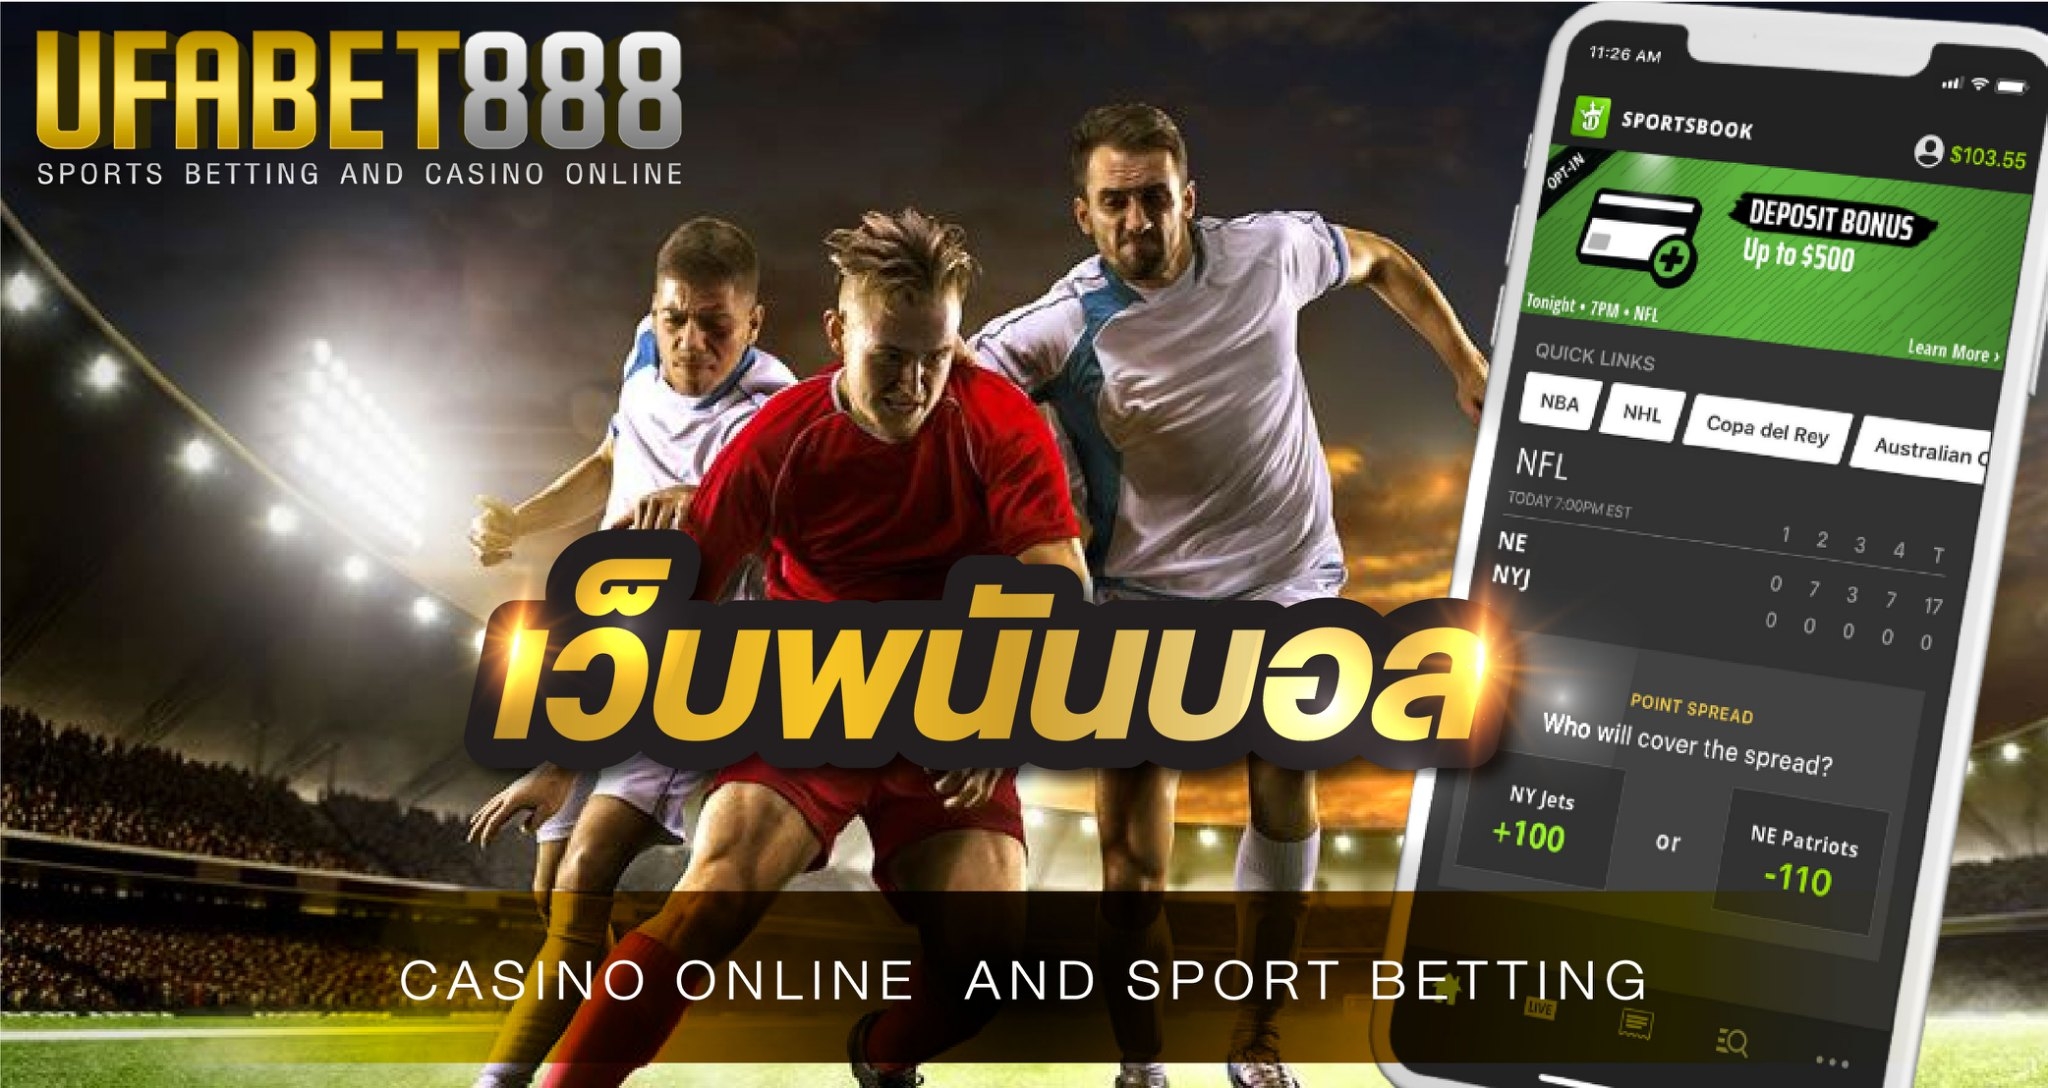 เว็บพนันบอล UFABET 888 เว็บแทงบอลอันดับ 1 ของประเทศ ผู้คิดค้นรูปแบบการแทงบอล ผ่านโทรศัพท์มือถือ เว็บแรกในประเทศไทย